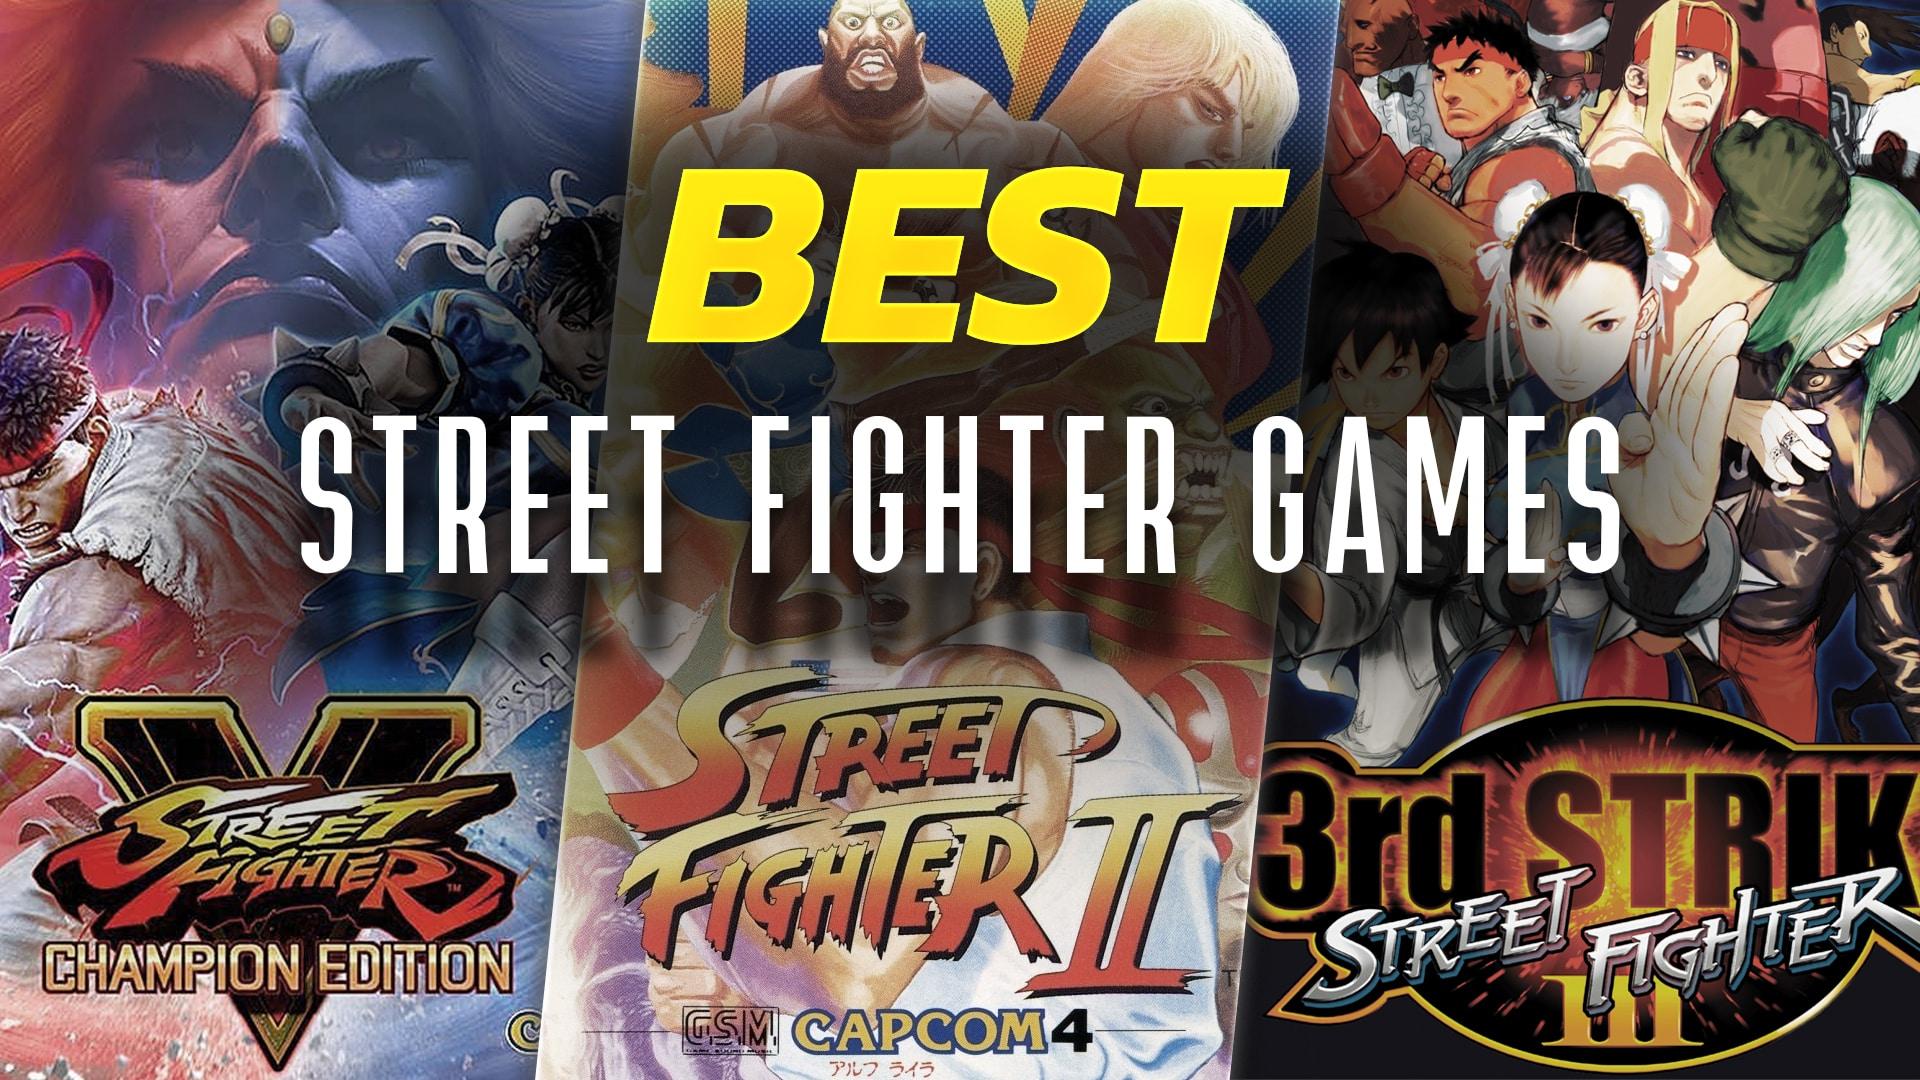 https://www.dexerto.com/cdn-cgi/image/width=3840,quality=75,format=auto/https://editors.dexerto.com/wp-content/uploads/2022/08/11/Best-Street-Fighter-Games.jpg